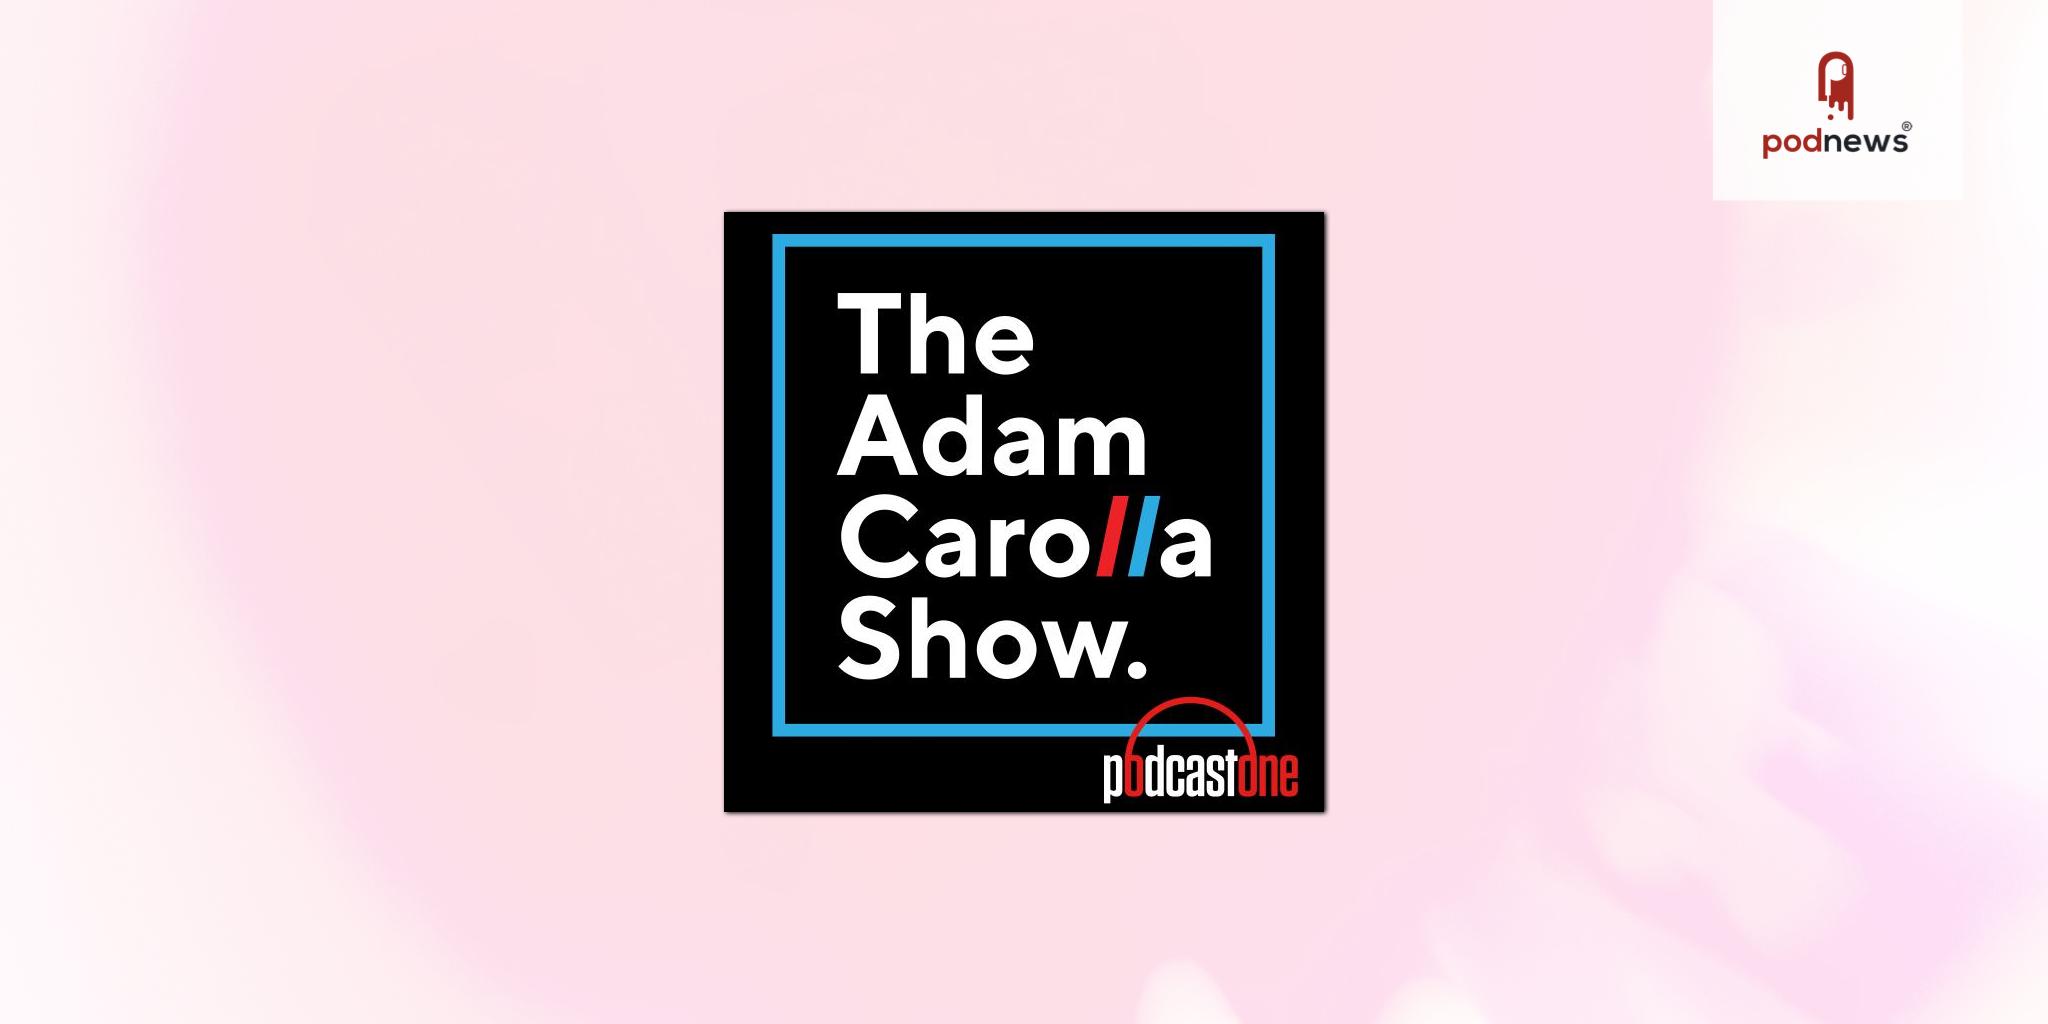 PodcastOne’s The Adam Carolla Show Podcast Celebrates Milestone 15 Year Anniversary